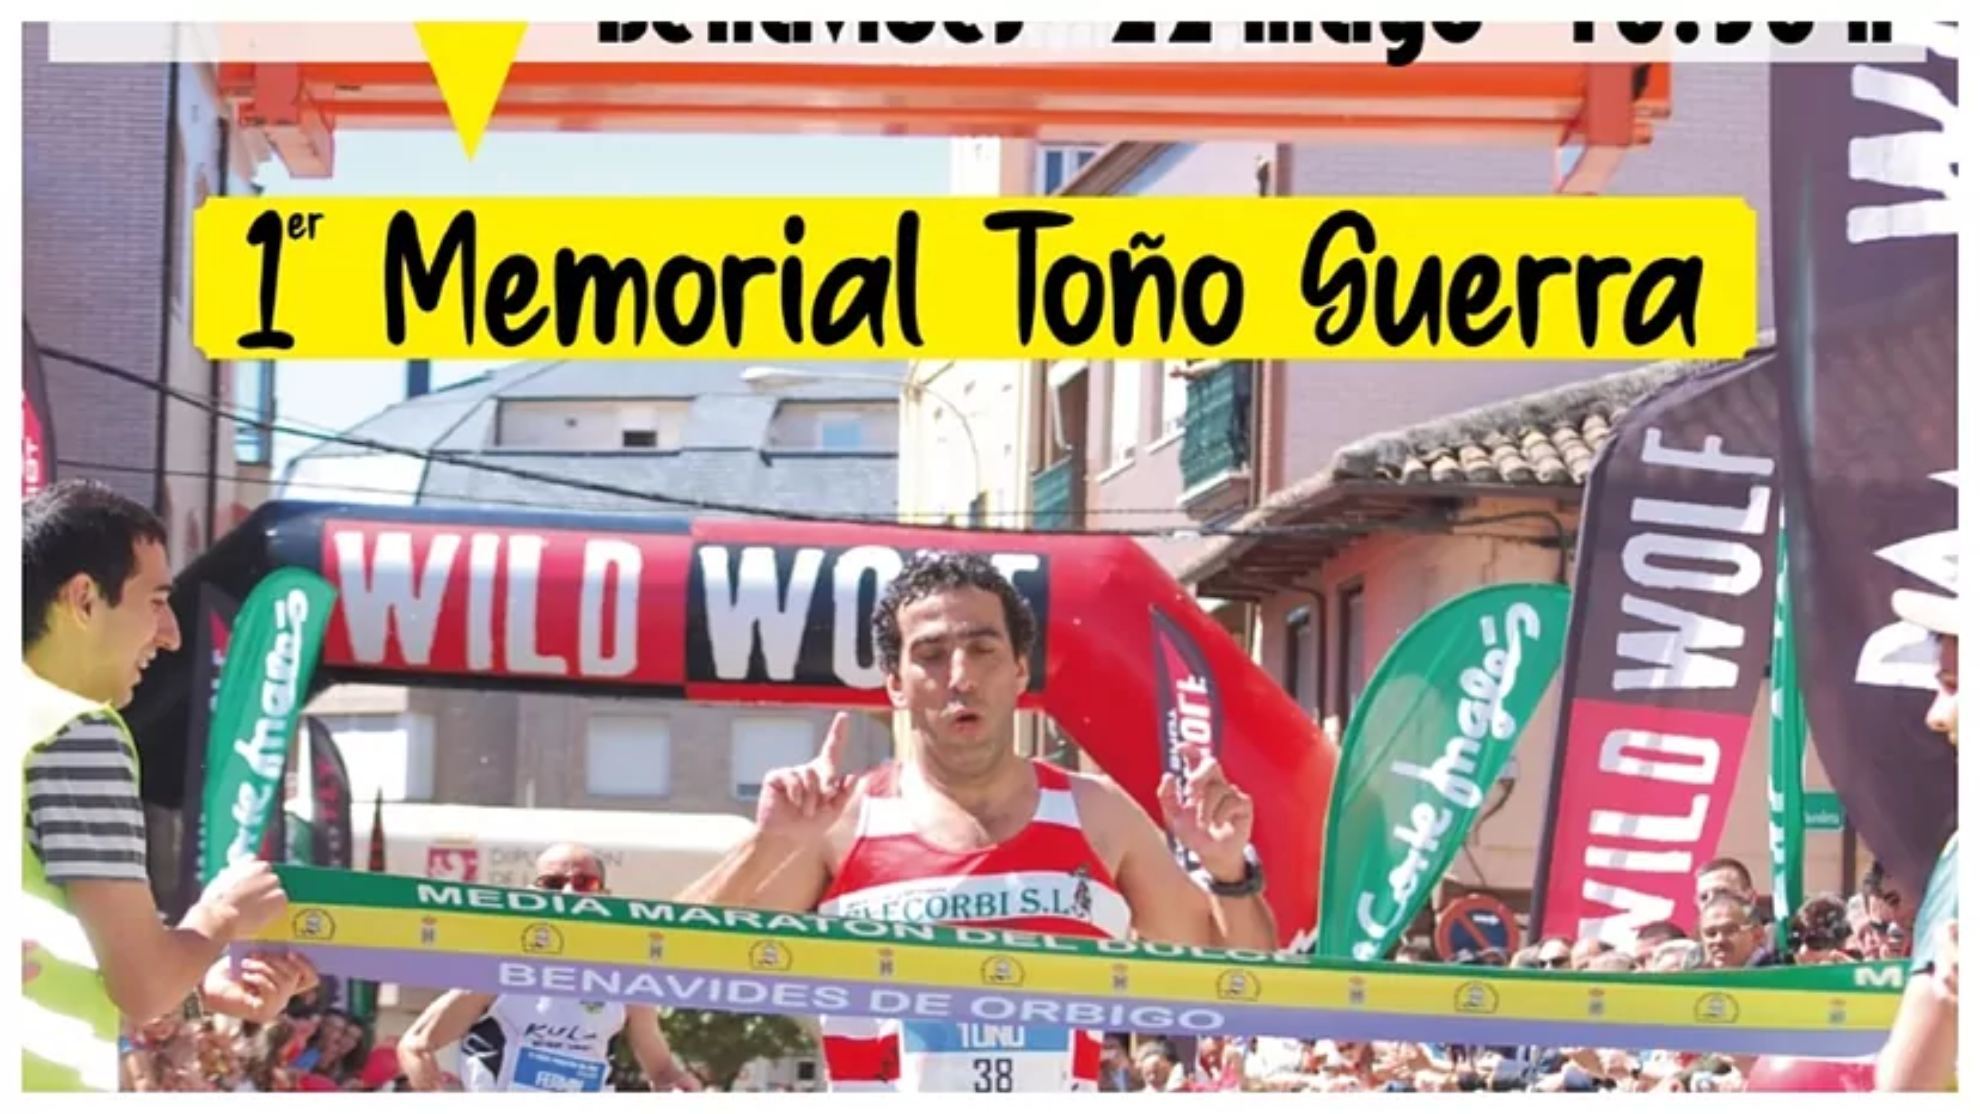 Imagen del cartel del medio maratón Memorial Toño Guerra